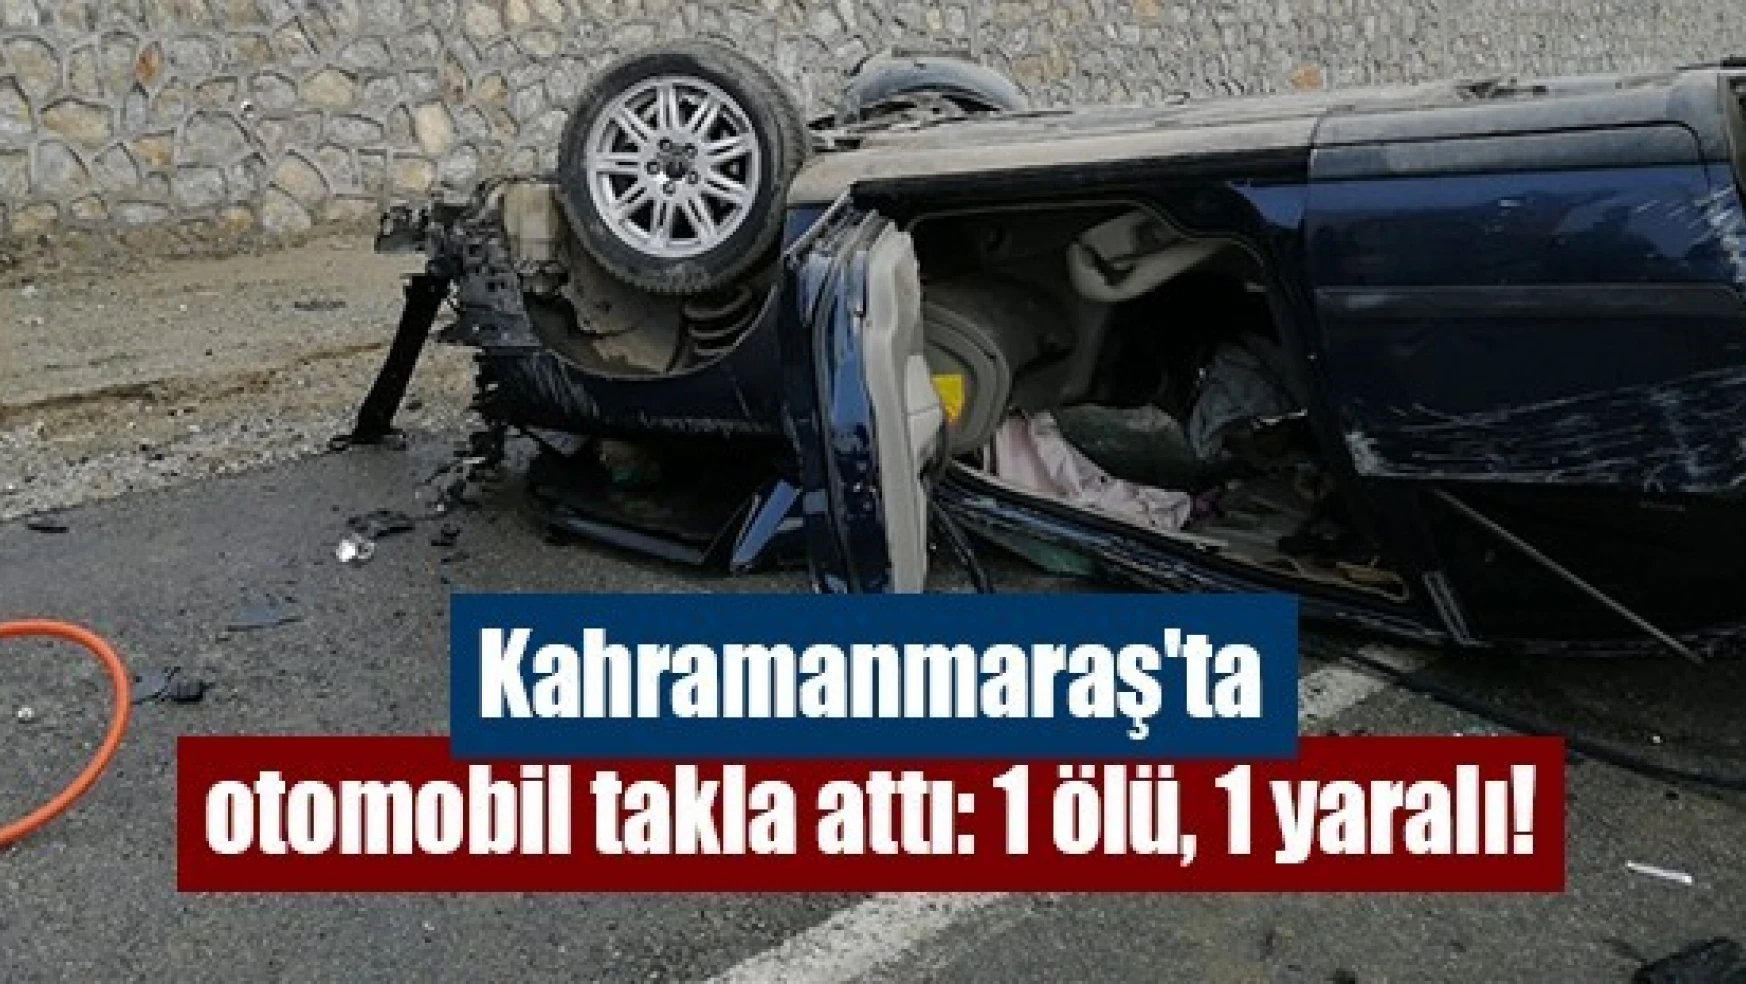 Kahramanmaraş'ta otomobil takla attı: 1 ölü, 1 yaralı!